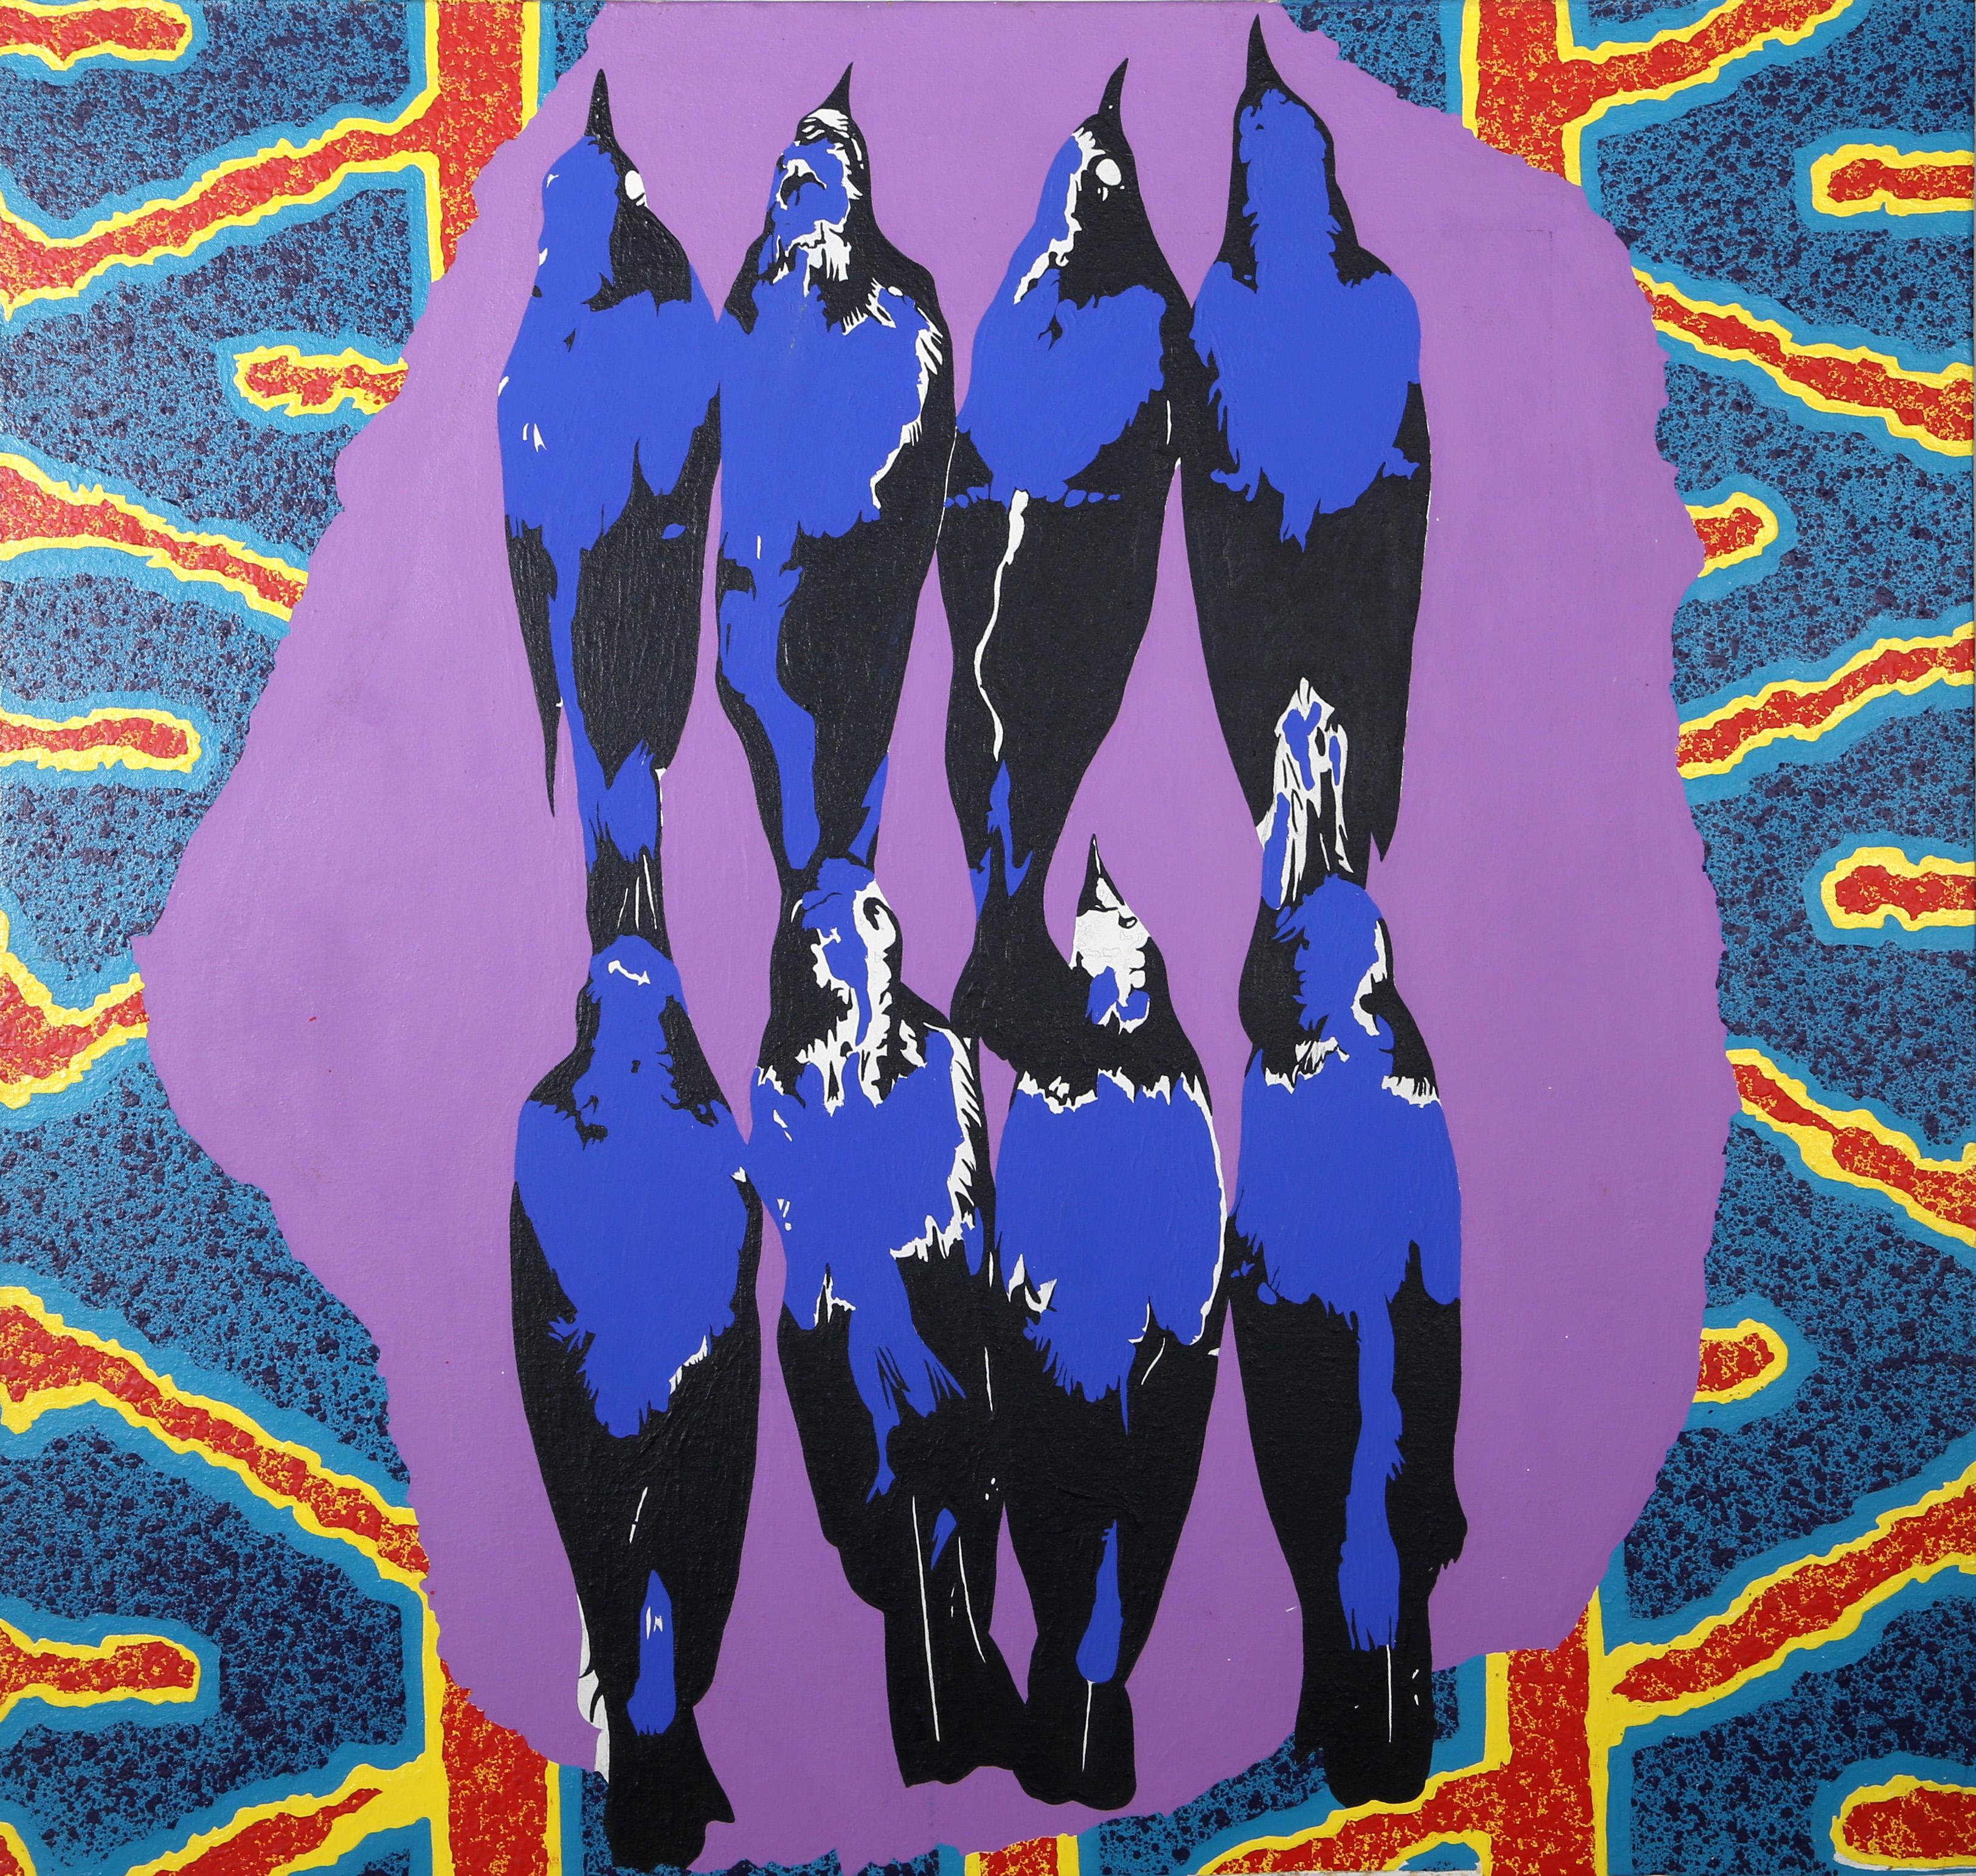 Rettet unsere Seelen
Michael Knigin, Amerikaner (1942-2011)
Datum: ca. 1992
Acryl auf Leinwand
Größe: 38 x 40 Zoll (96,52 x 101,6 cm)

Acht elektrisch blaue Krähen sind in zwei Reihen vor einem psychedelischen und neonfarbenen Hintergrund